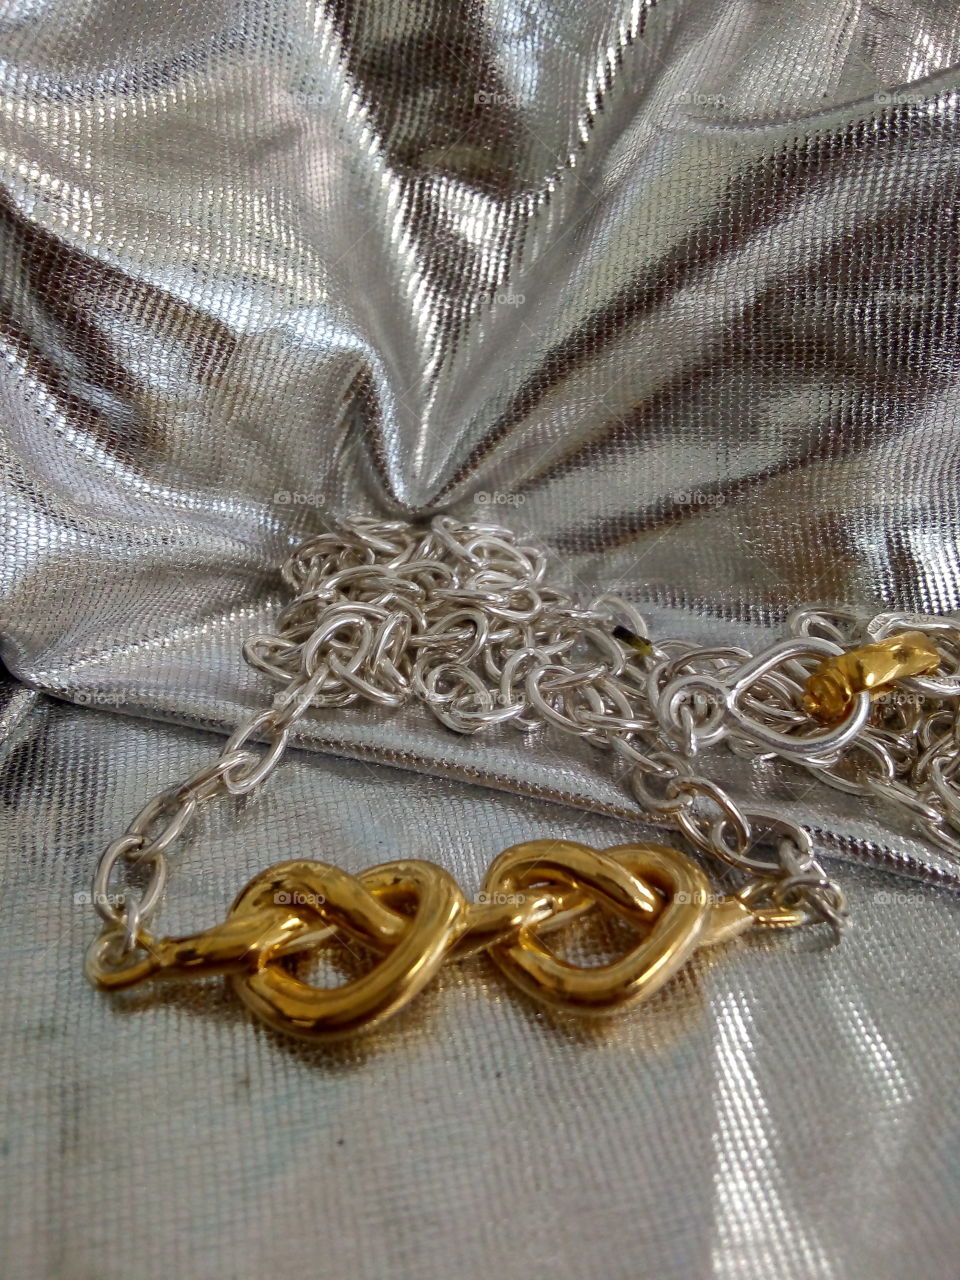 dije de dos corazones unidos, con cadena. Elaborados en plata ley con una capa de oro de 18 k.